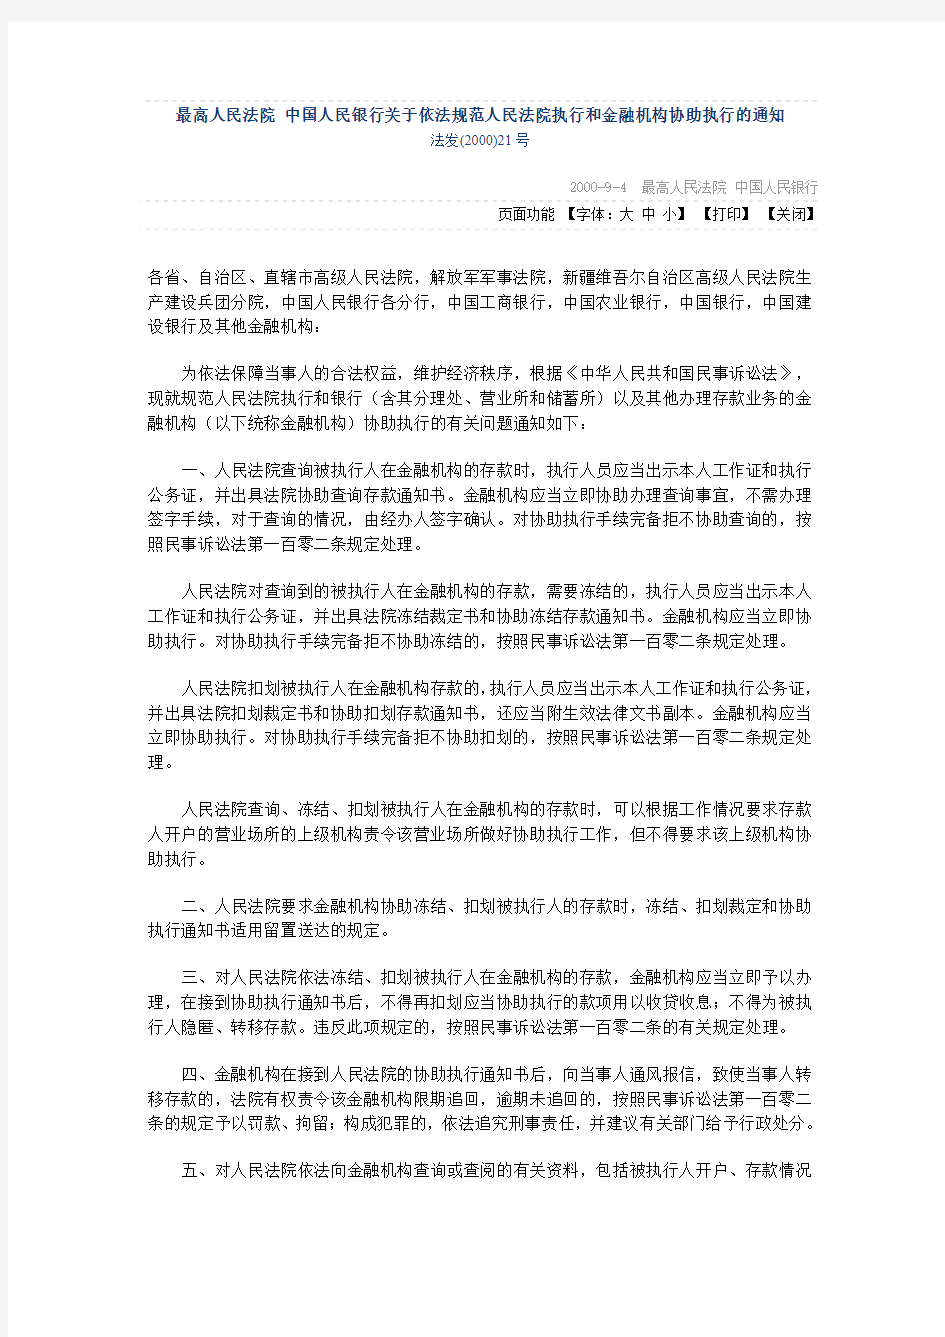 2000年中国人民银行关于依法规范人民法院执行和金融机构协助执行的通知法发(2000)21号